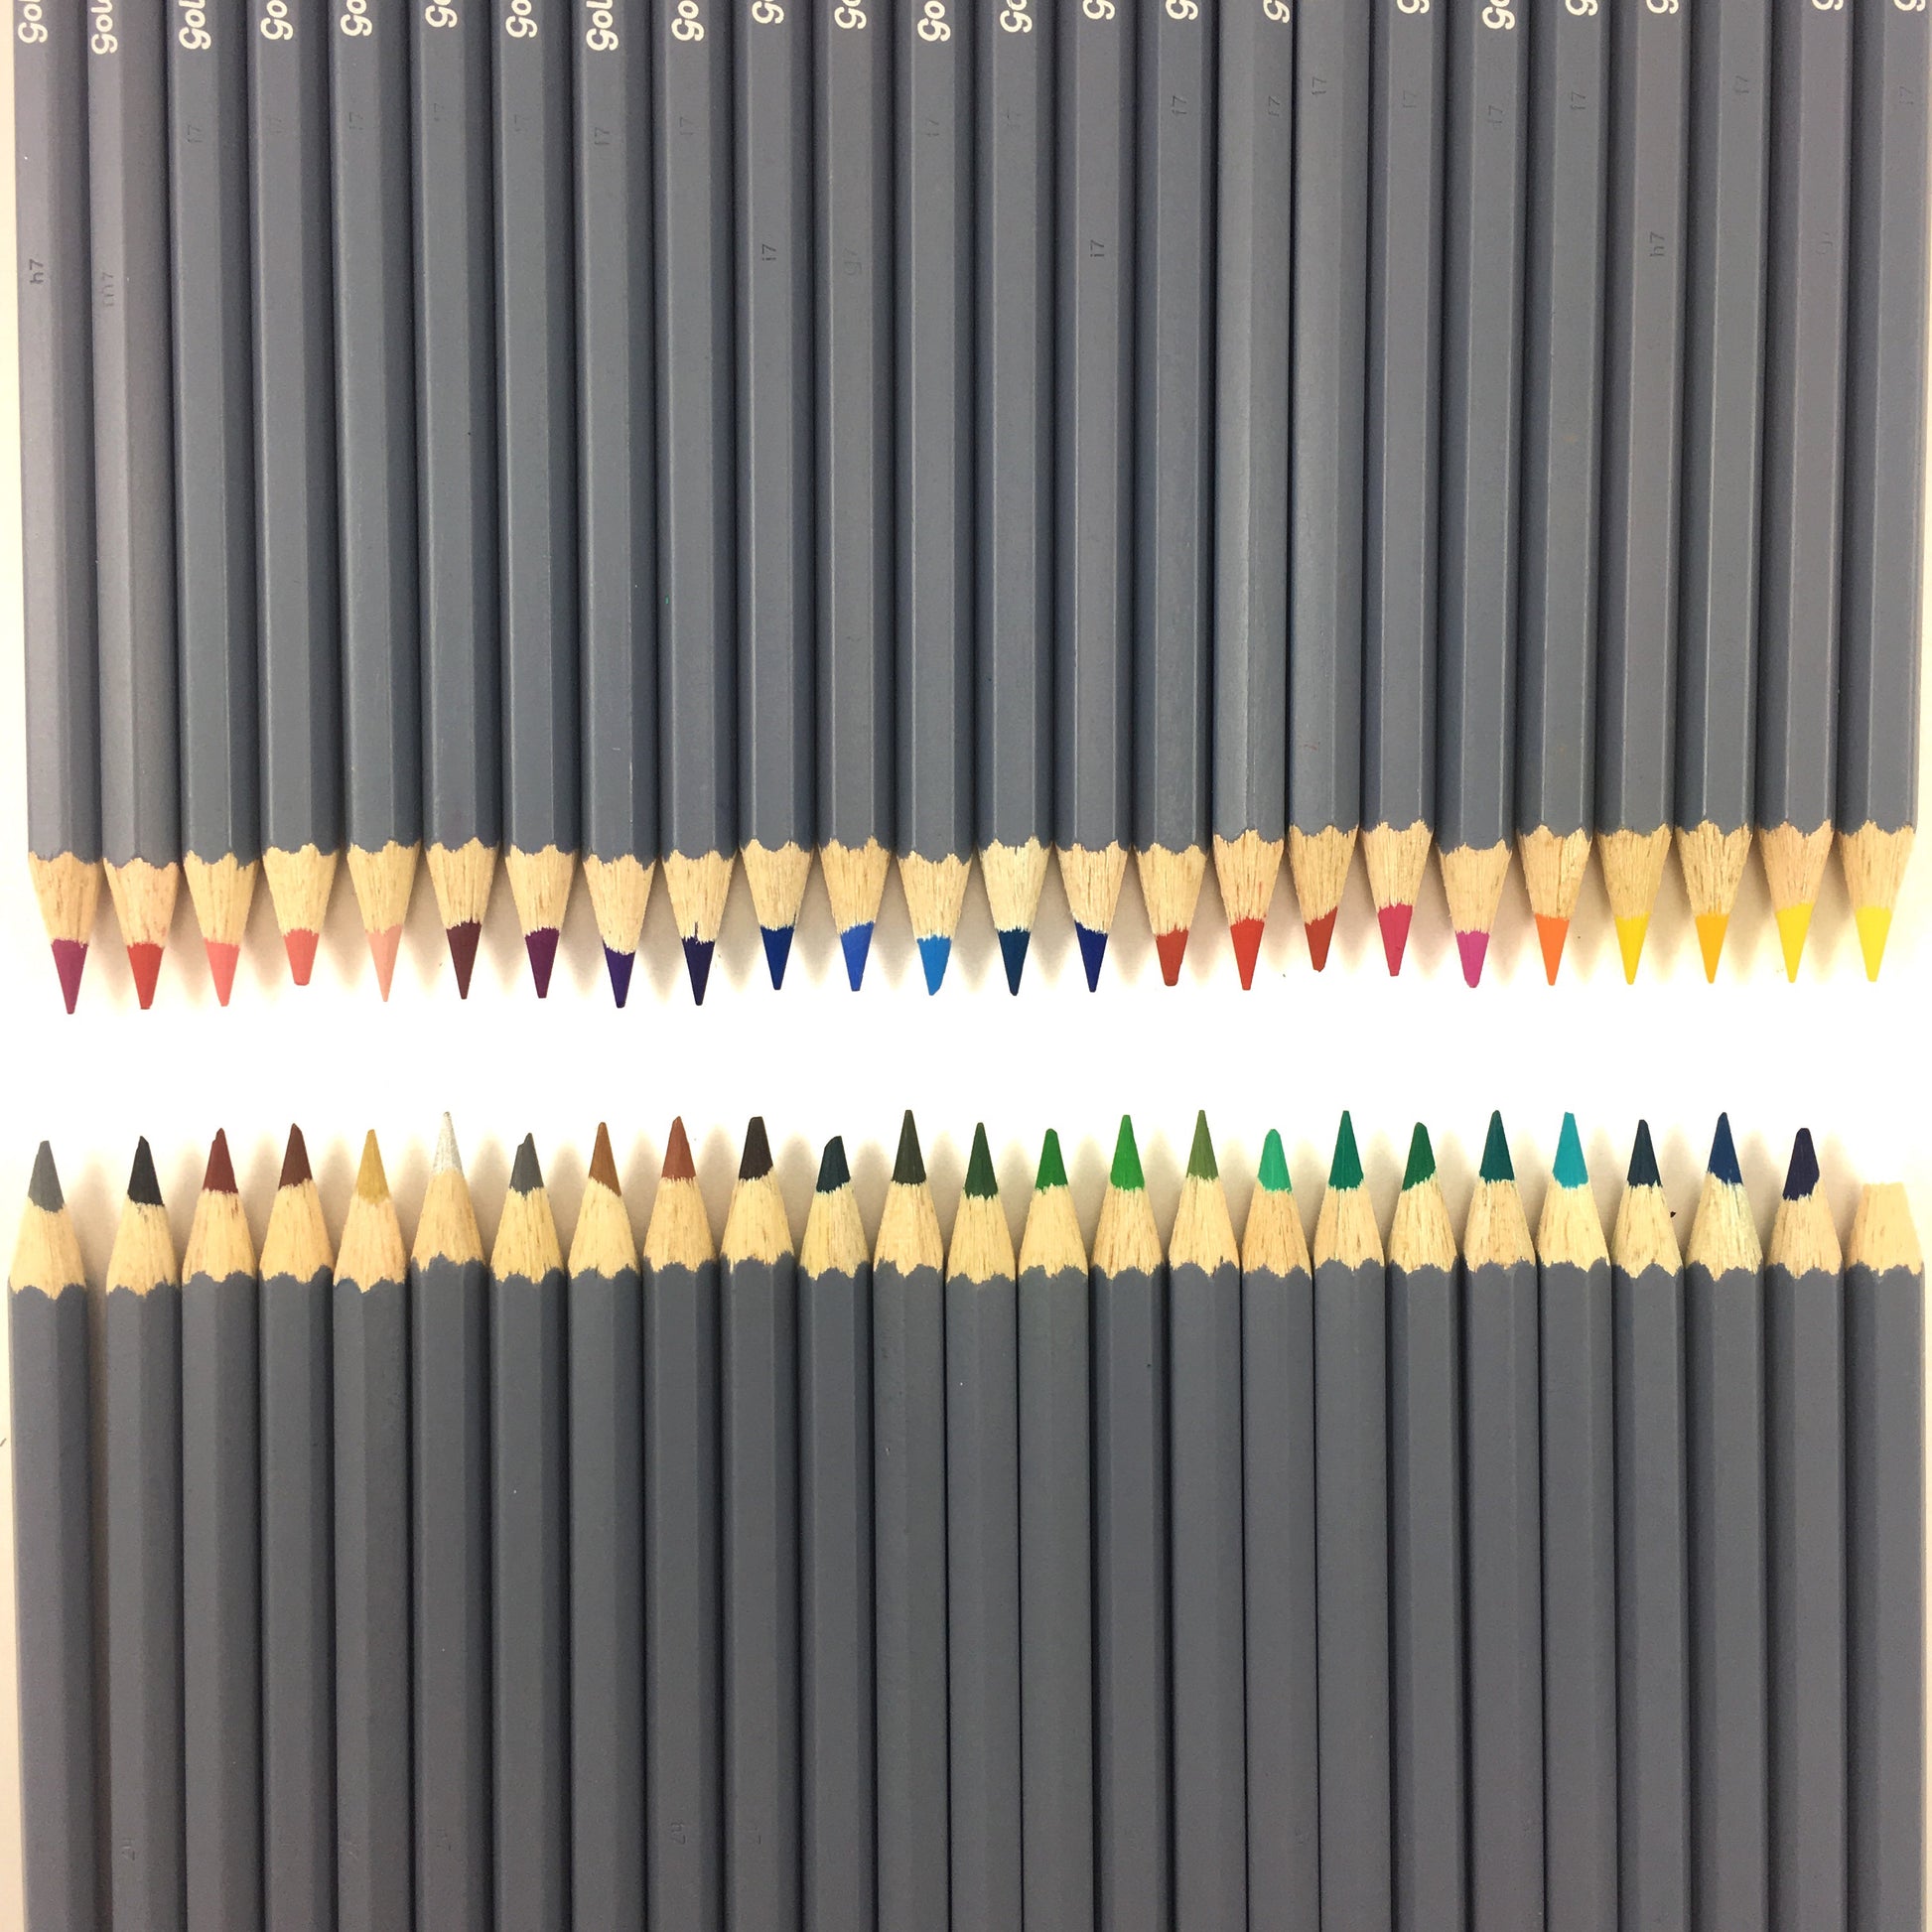 Faber-Castell Graphite Aquarelle Pencil 5/Set